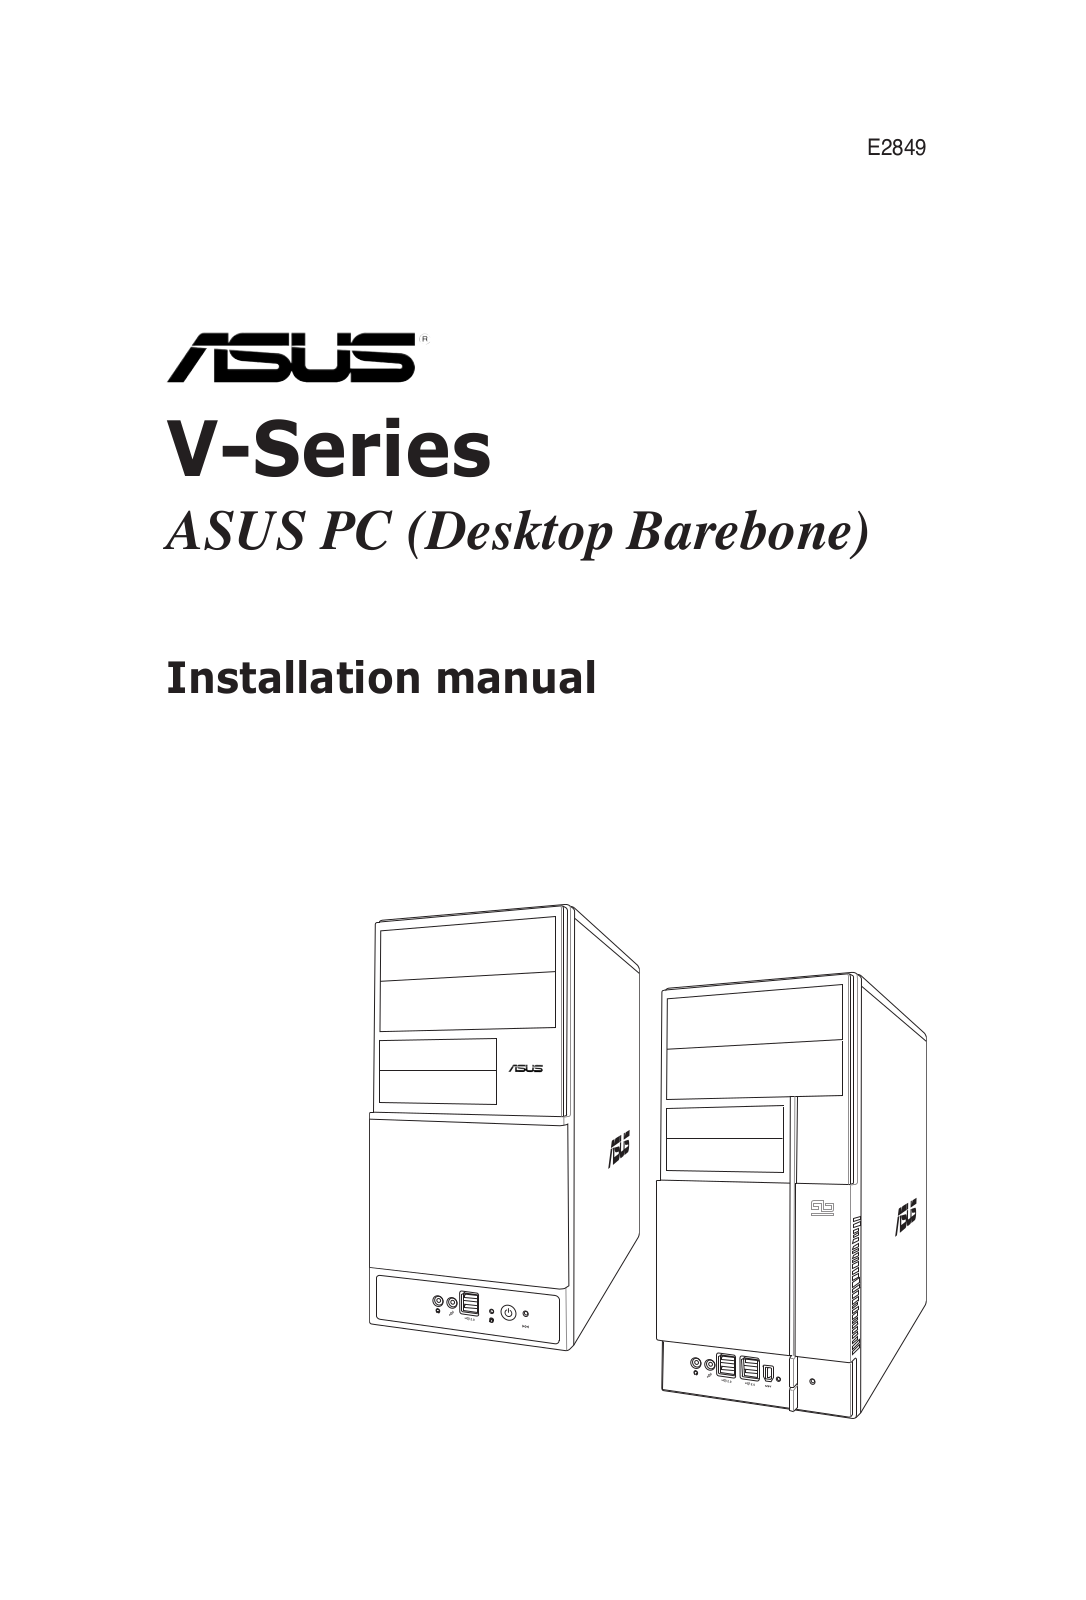 ASUS V-SERIES Installation Manual